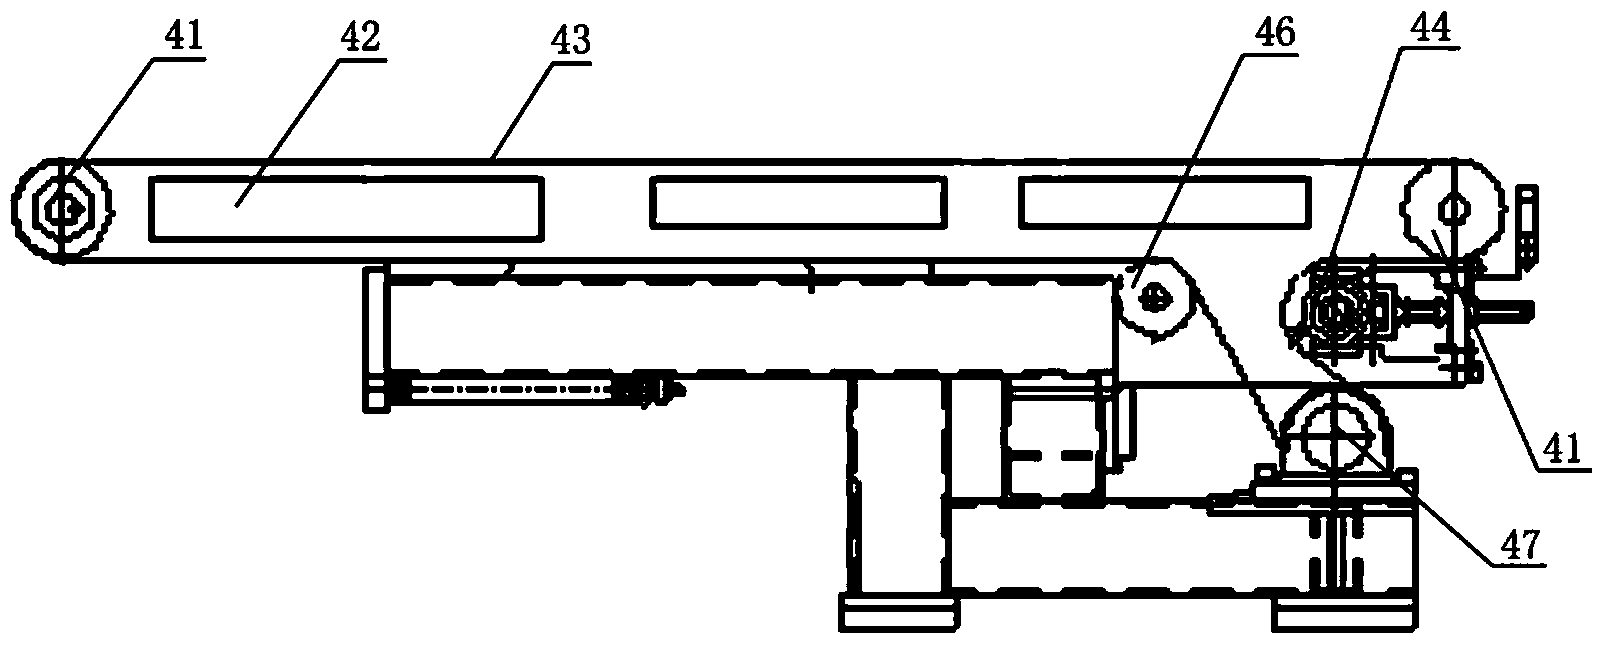 Discharge mechanism of sheet metal shearing machine